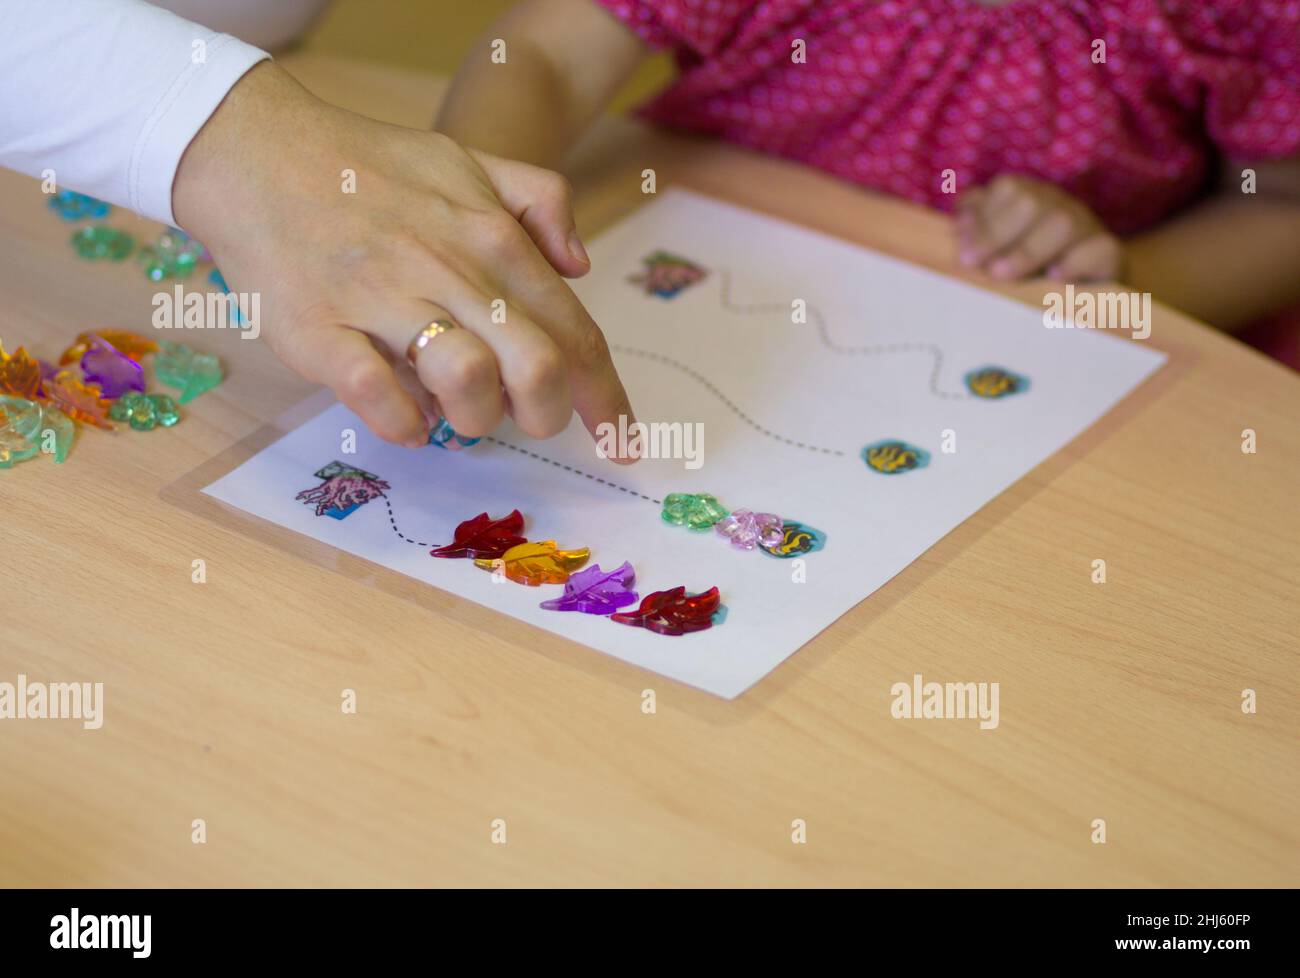 Kinderhände spielen mit bunten Steinen, um feinmotorische Fähigkeiten zu entwickeln Stockfoto